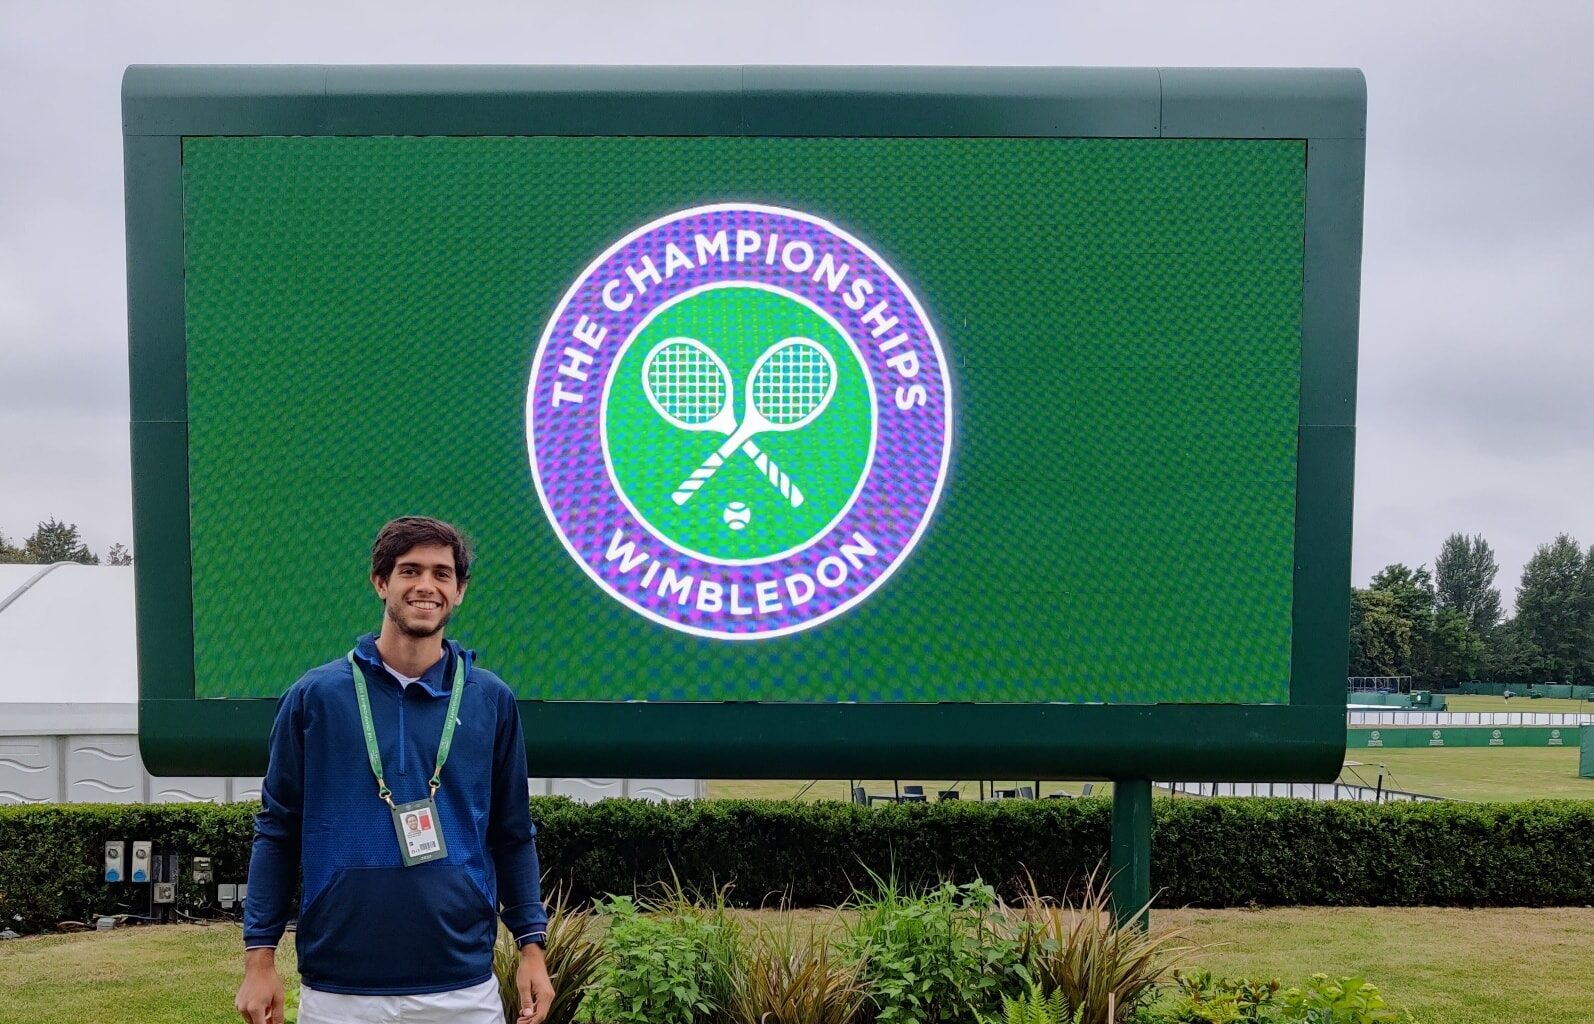 Boas notícias! Sport TV abre canal extra para acompanhar jogos de João  Sousa e Nuno Borges em Wimbledon